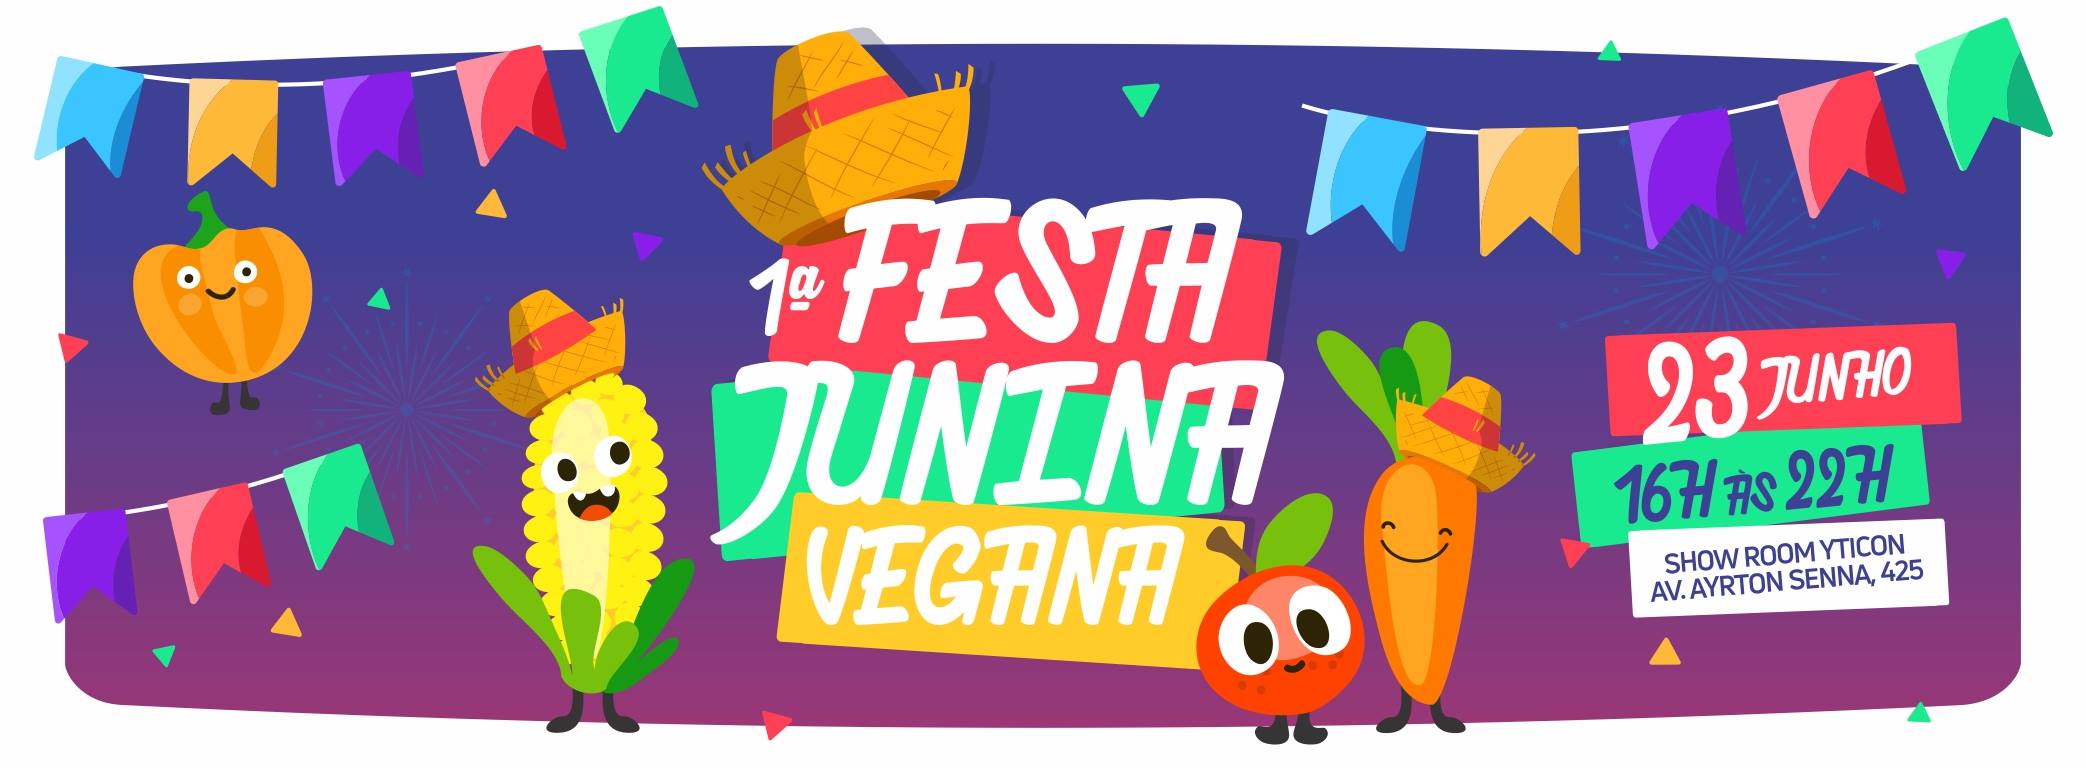 Festa junina vegana